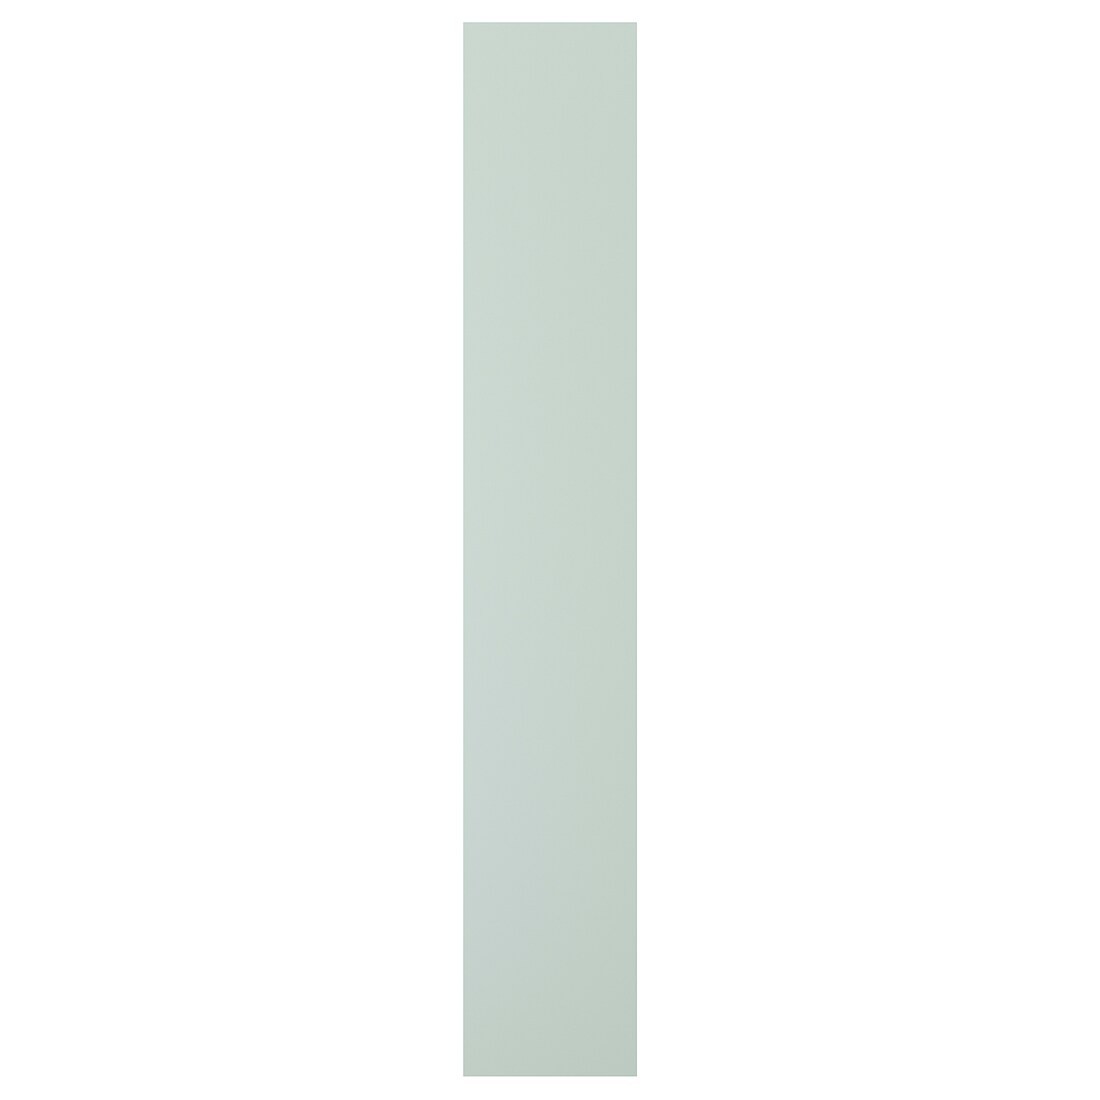 IKEA ENHET ЭНХЕТ Дверь, бледно-серо-зеленый, 30x180 см 90539524 905.395.24